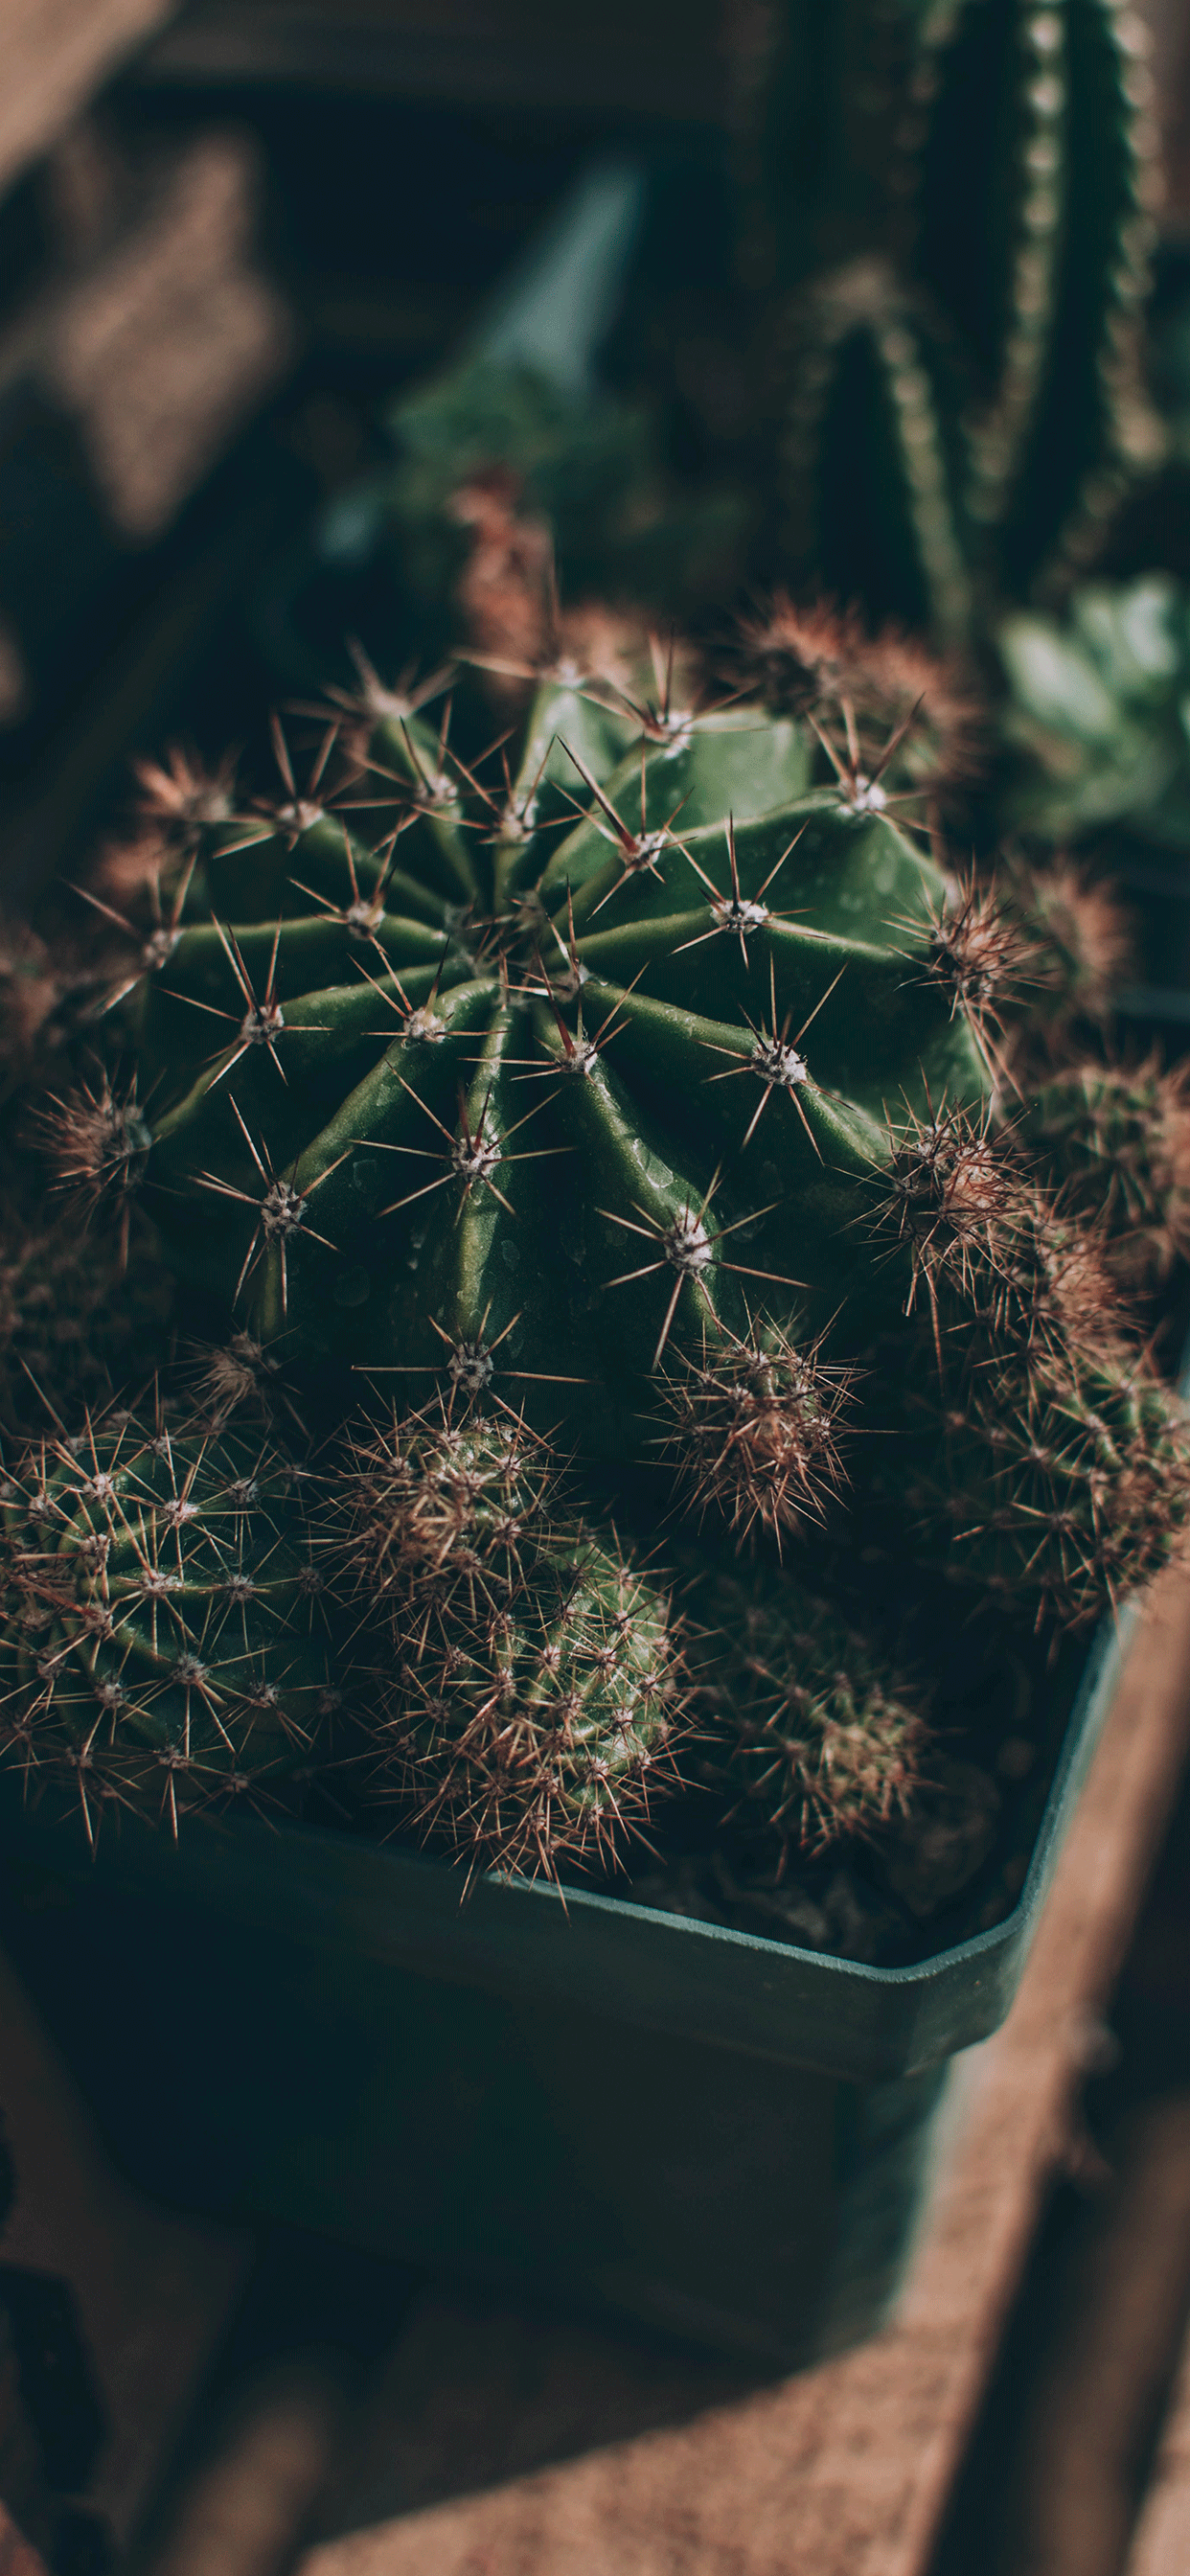 cactus wallpaper,cactus,terrestrial plant,vegetation,thorns, spines